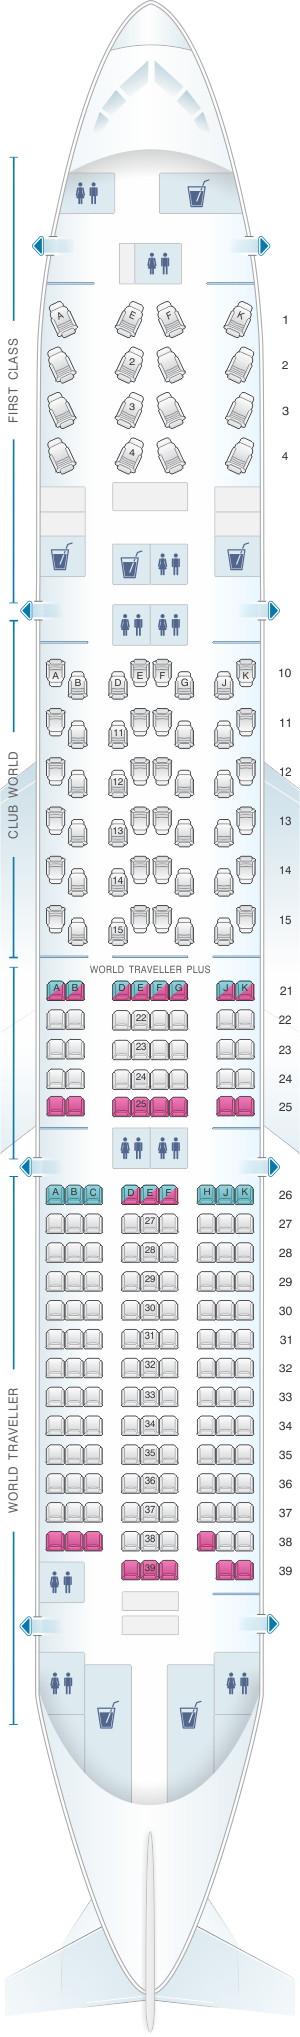 boeing 777 jet british airways seating